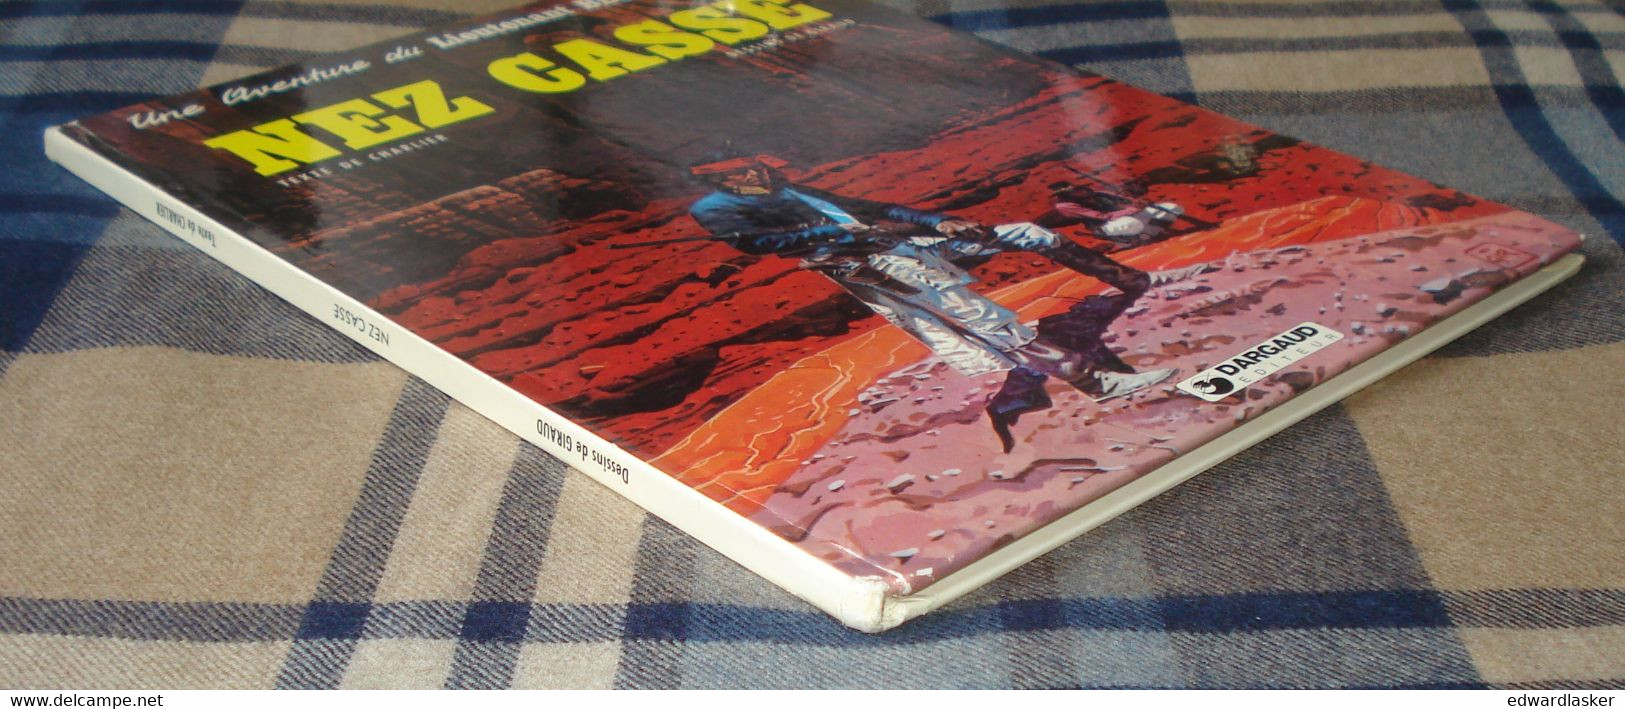 BLUEBERRY 18 : NEZ CASSÉ - Charlier Giraud - EO Dargaud 1980 - bon état +